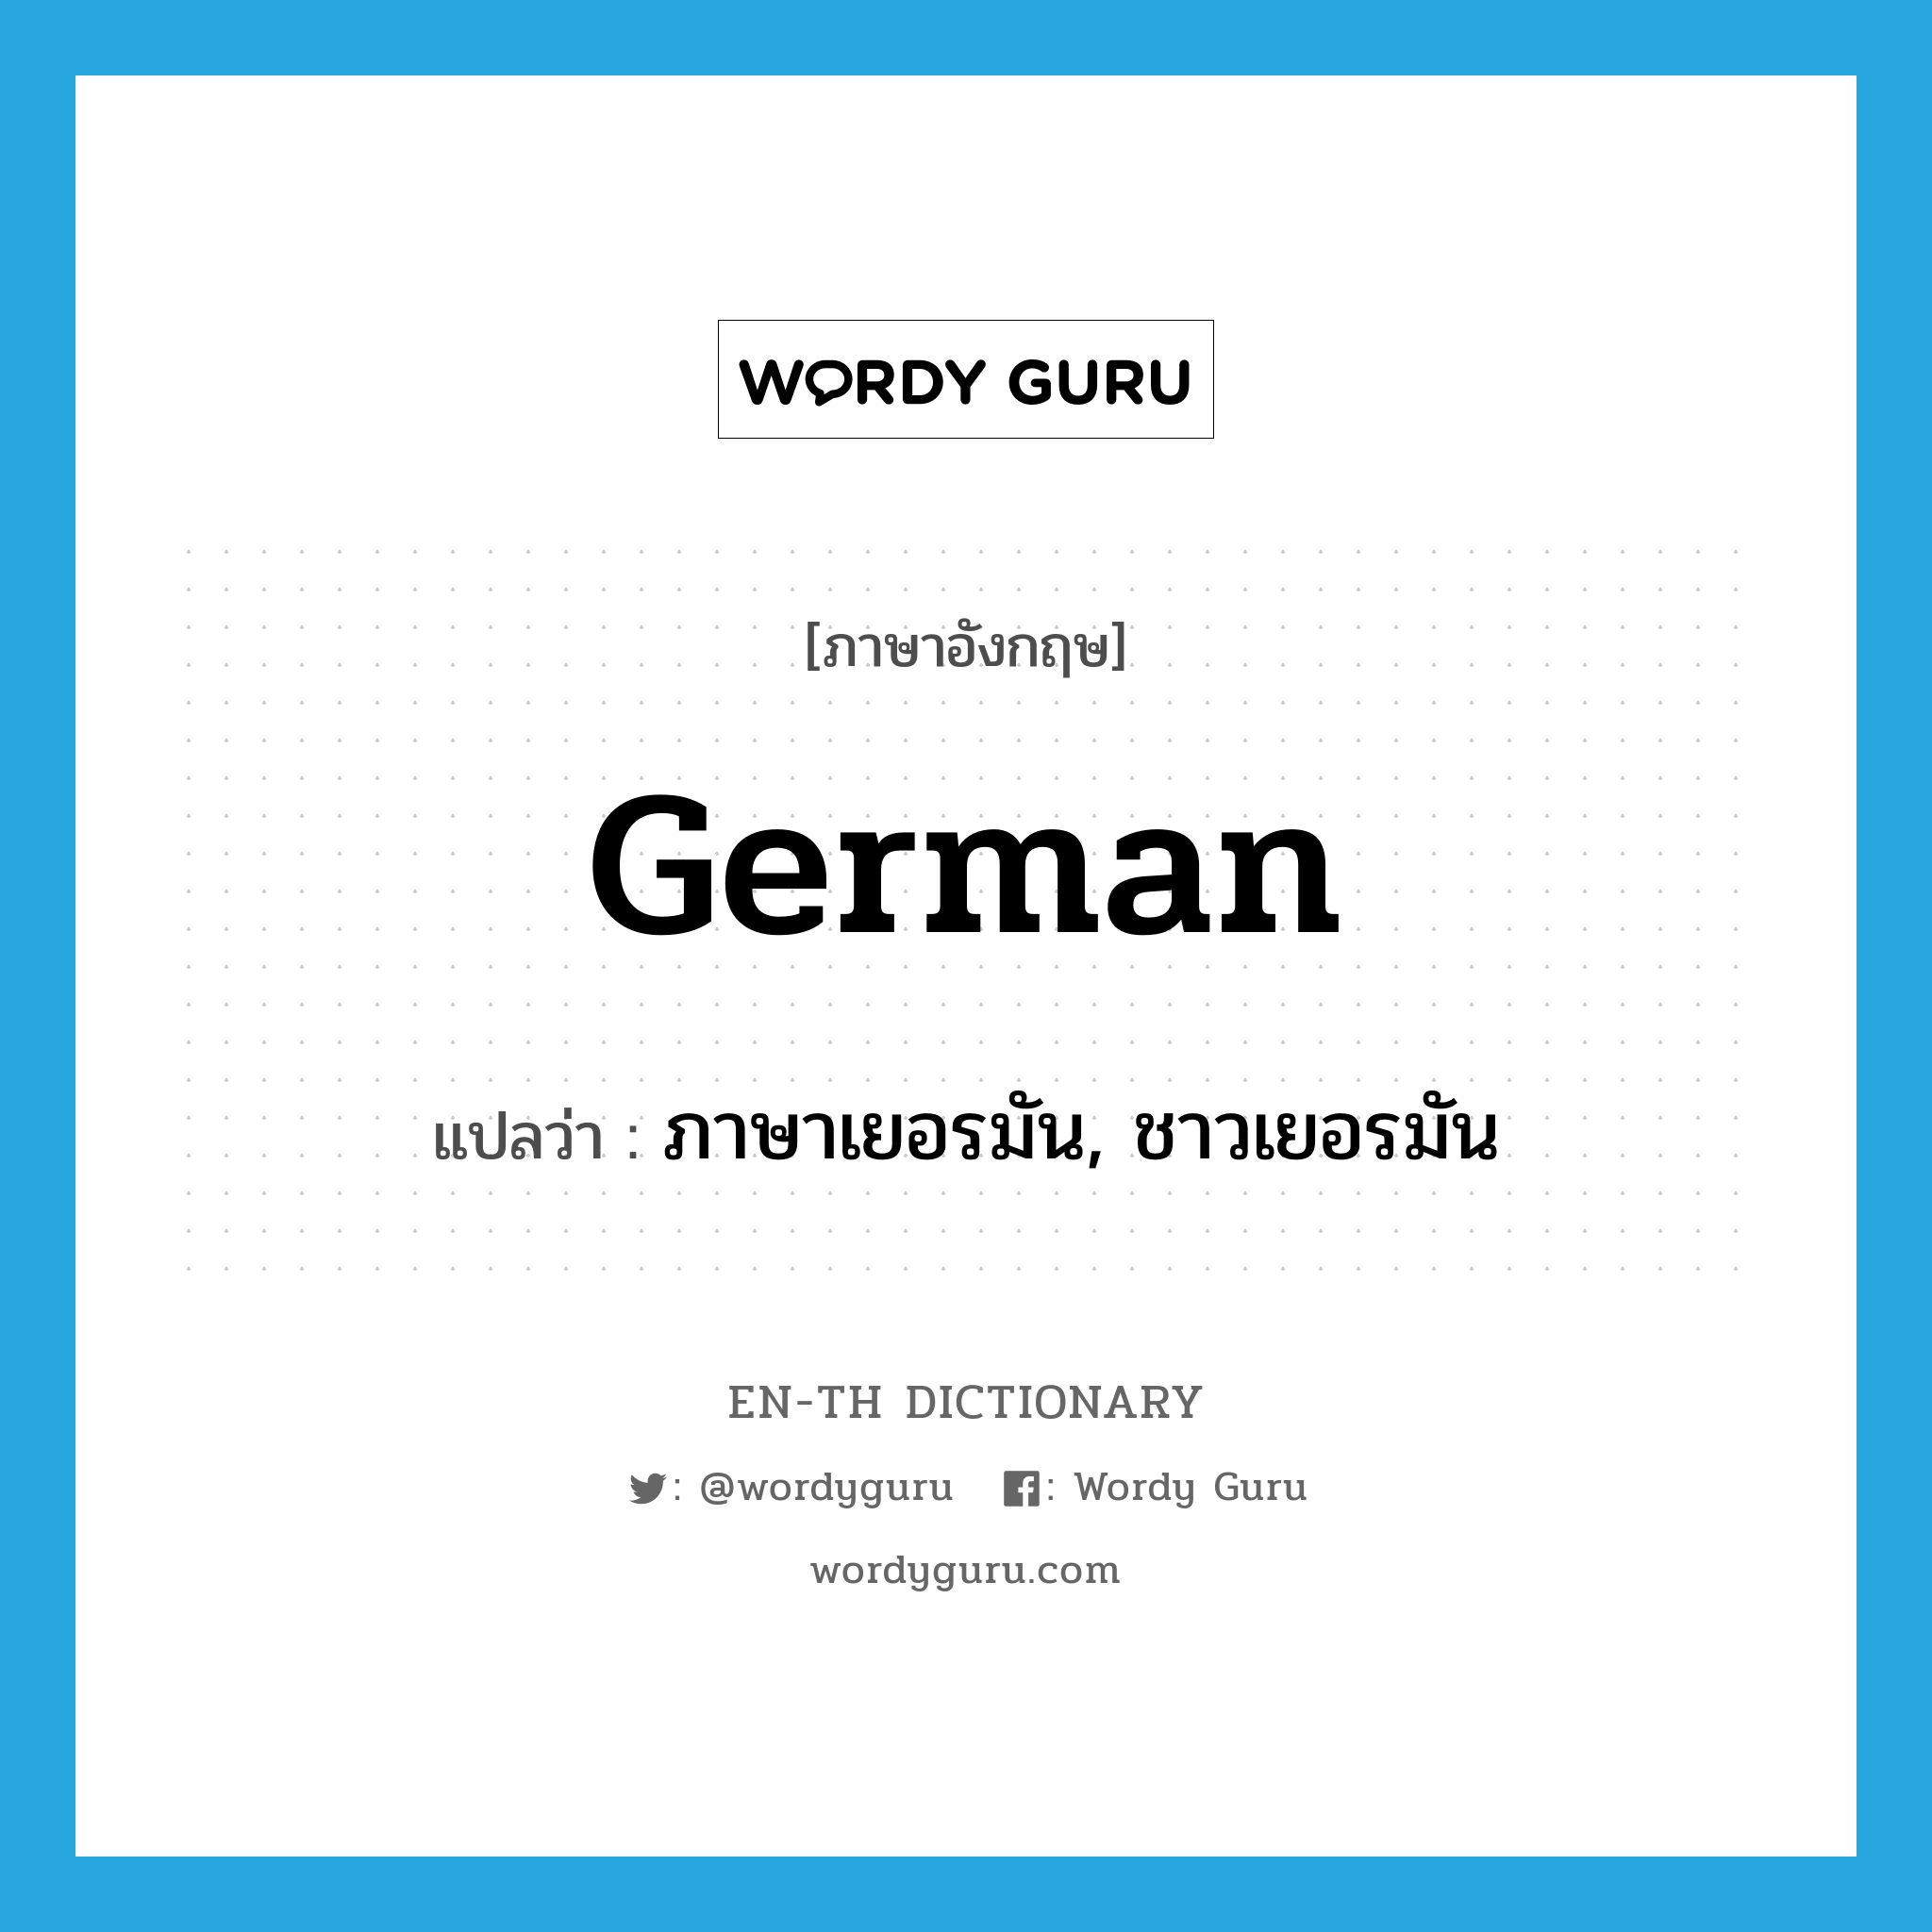 ภาษาเยอรมัน, ชาวเยอรมัน ภาษาอังกฤษ?, คำศัพท์ภาษาอังกฤษ ภาษาเยอรมัน, ชาวเยอรมัน แปลว่า German ประเภท N หมวด N